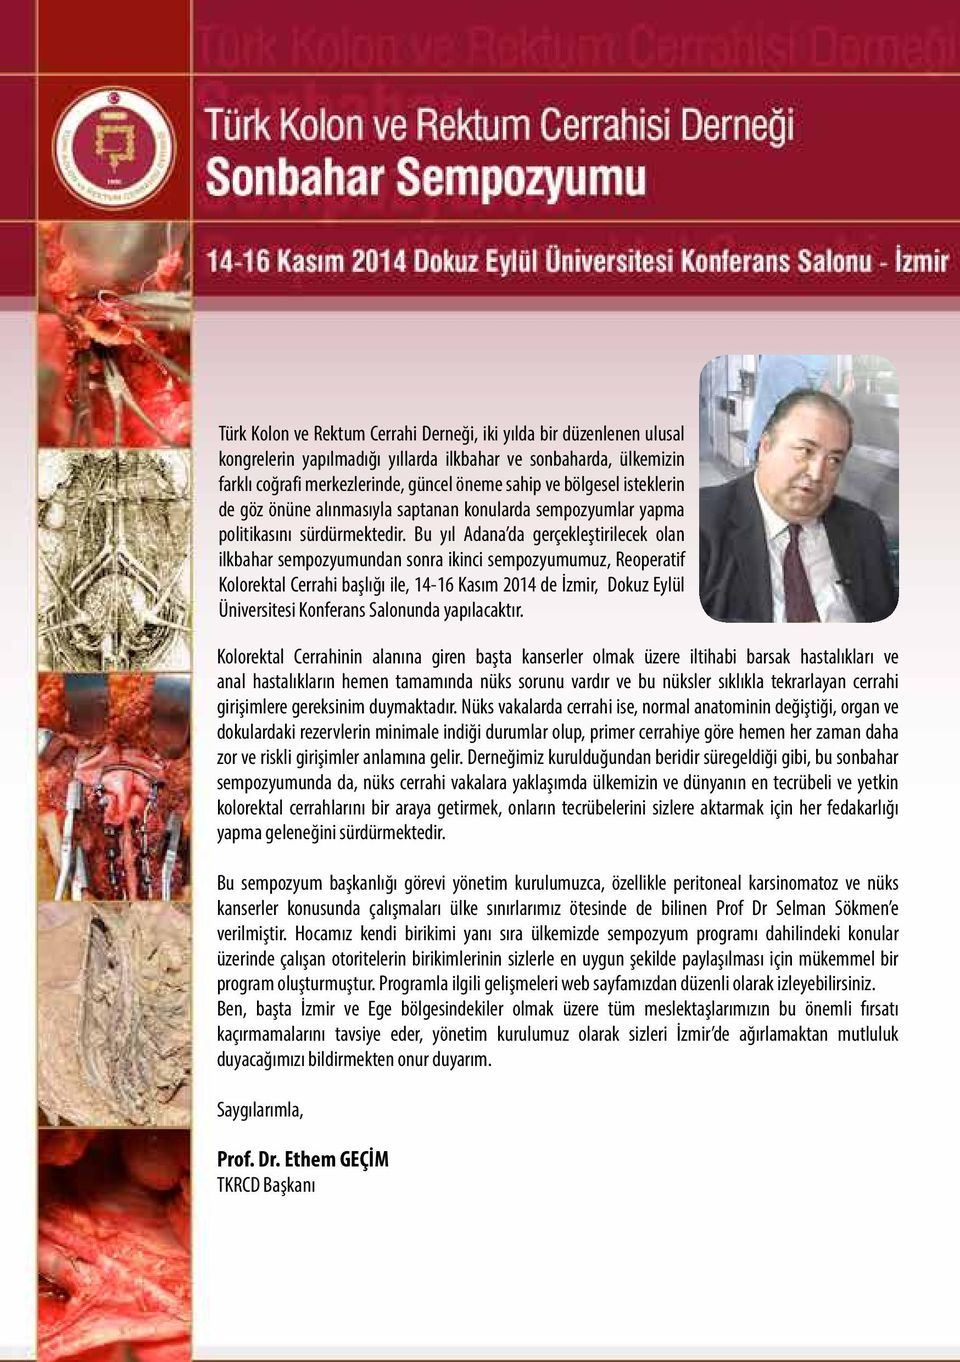 Bu yıl Adana da gerçekleştirilecek olan ilkbahar sempozyumundan sonra ikinci sempozyumumuz, Reoperatif Kolorektal Cerrahi başlığı ile, 14-16 Kasım 2014 de İzmir, Dokuz Eylül Üniversitesi Konferans